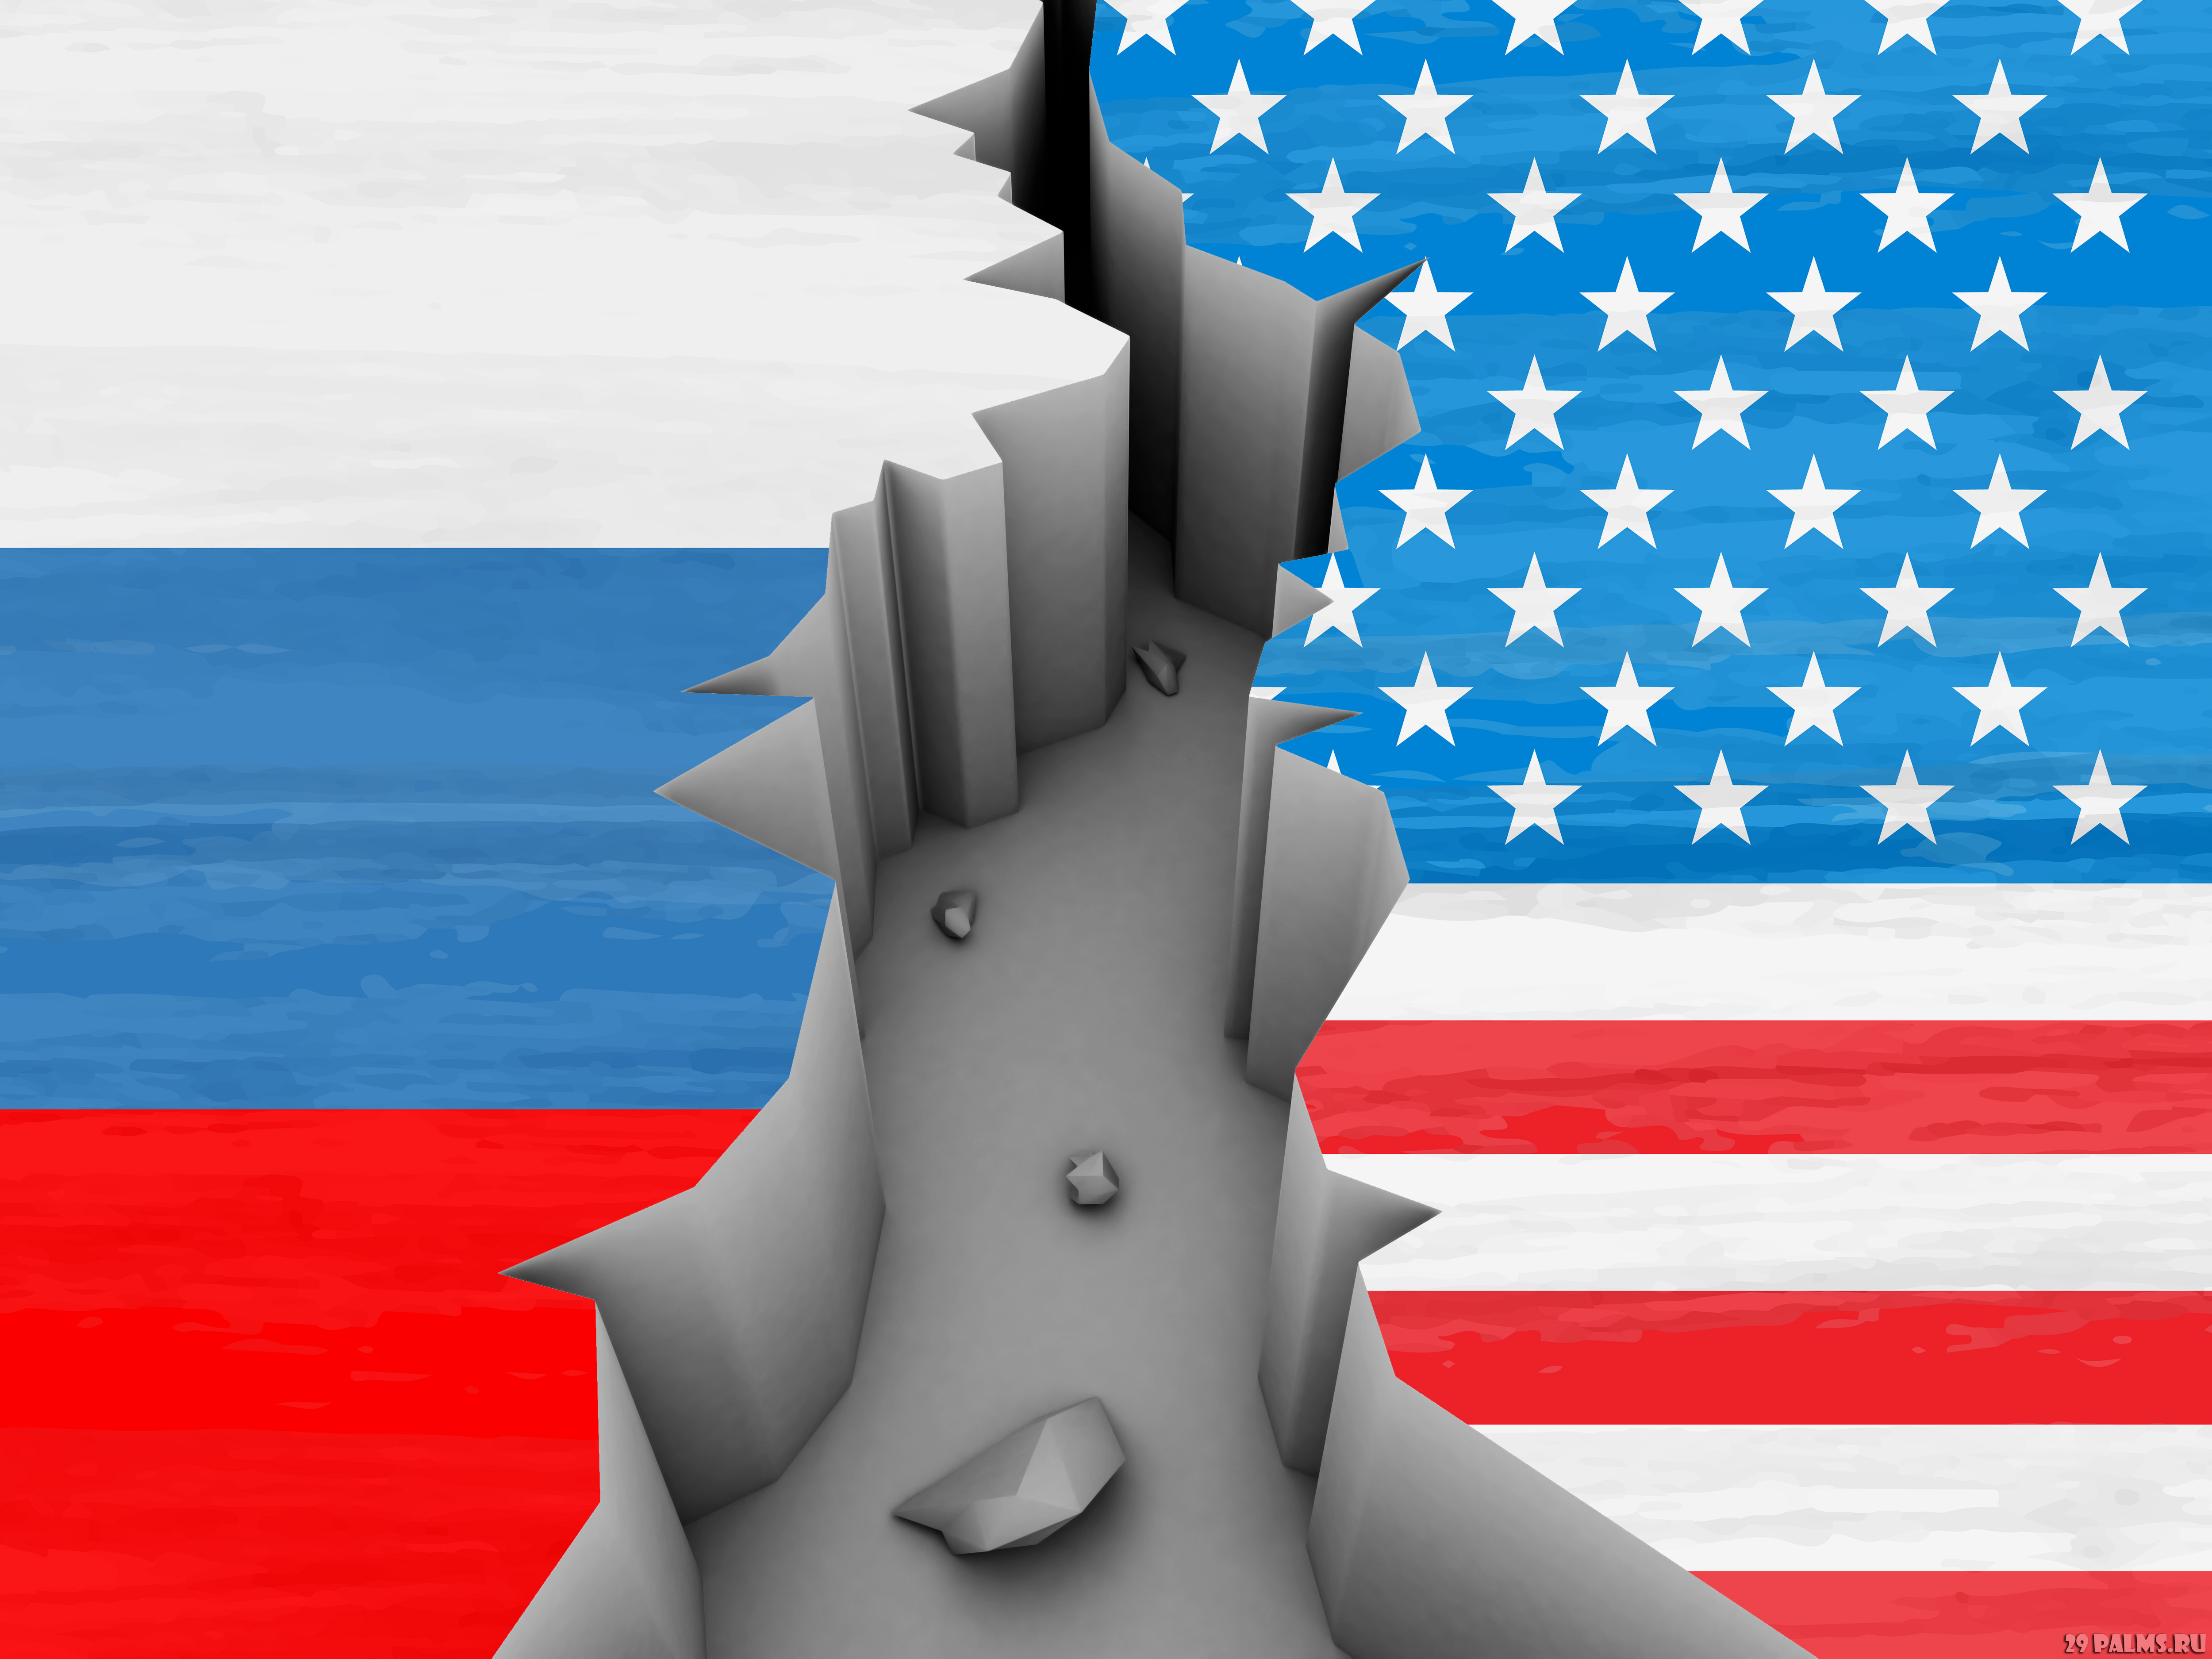 Противостояние с Западом погубит Россию – эксперт [СЮЖЕТ]